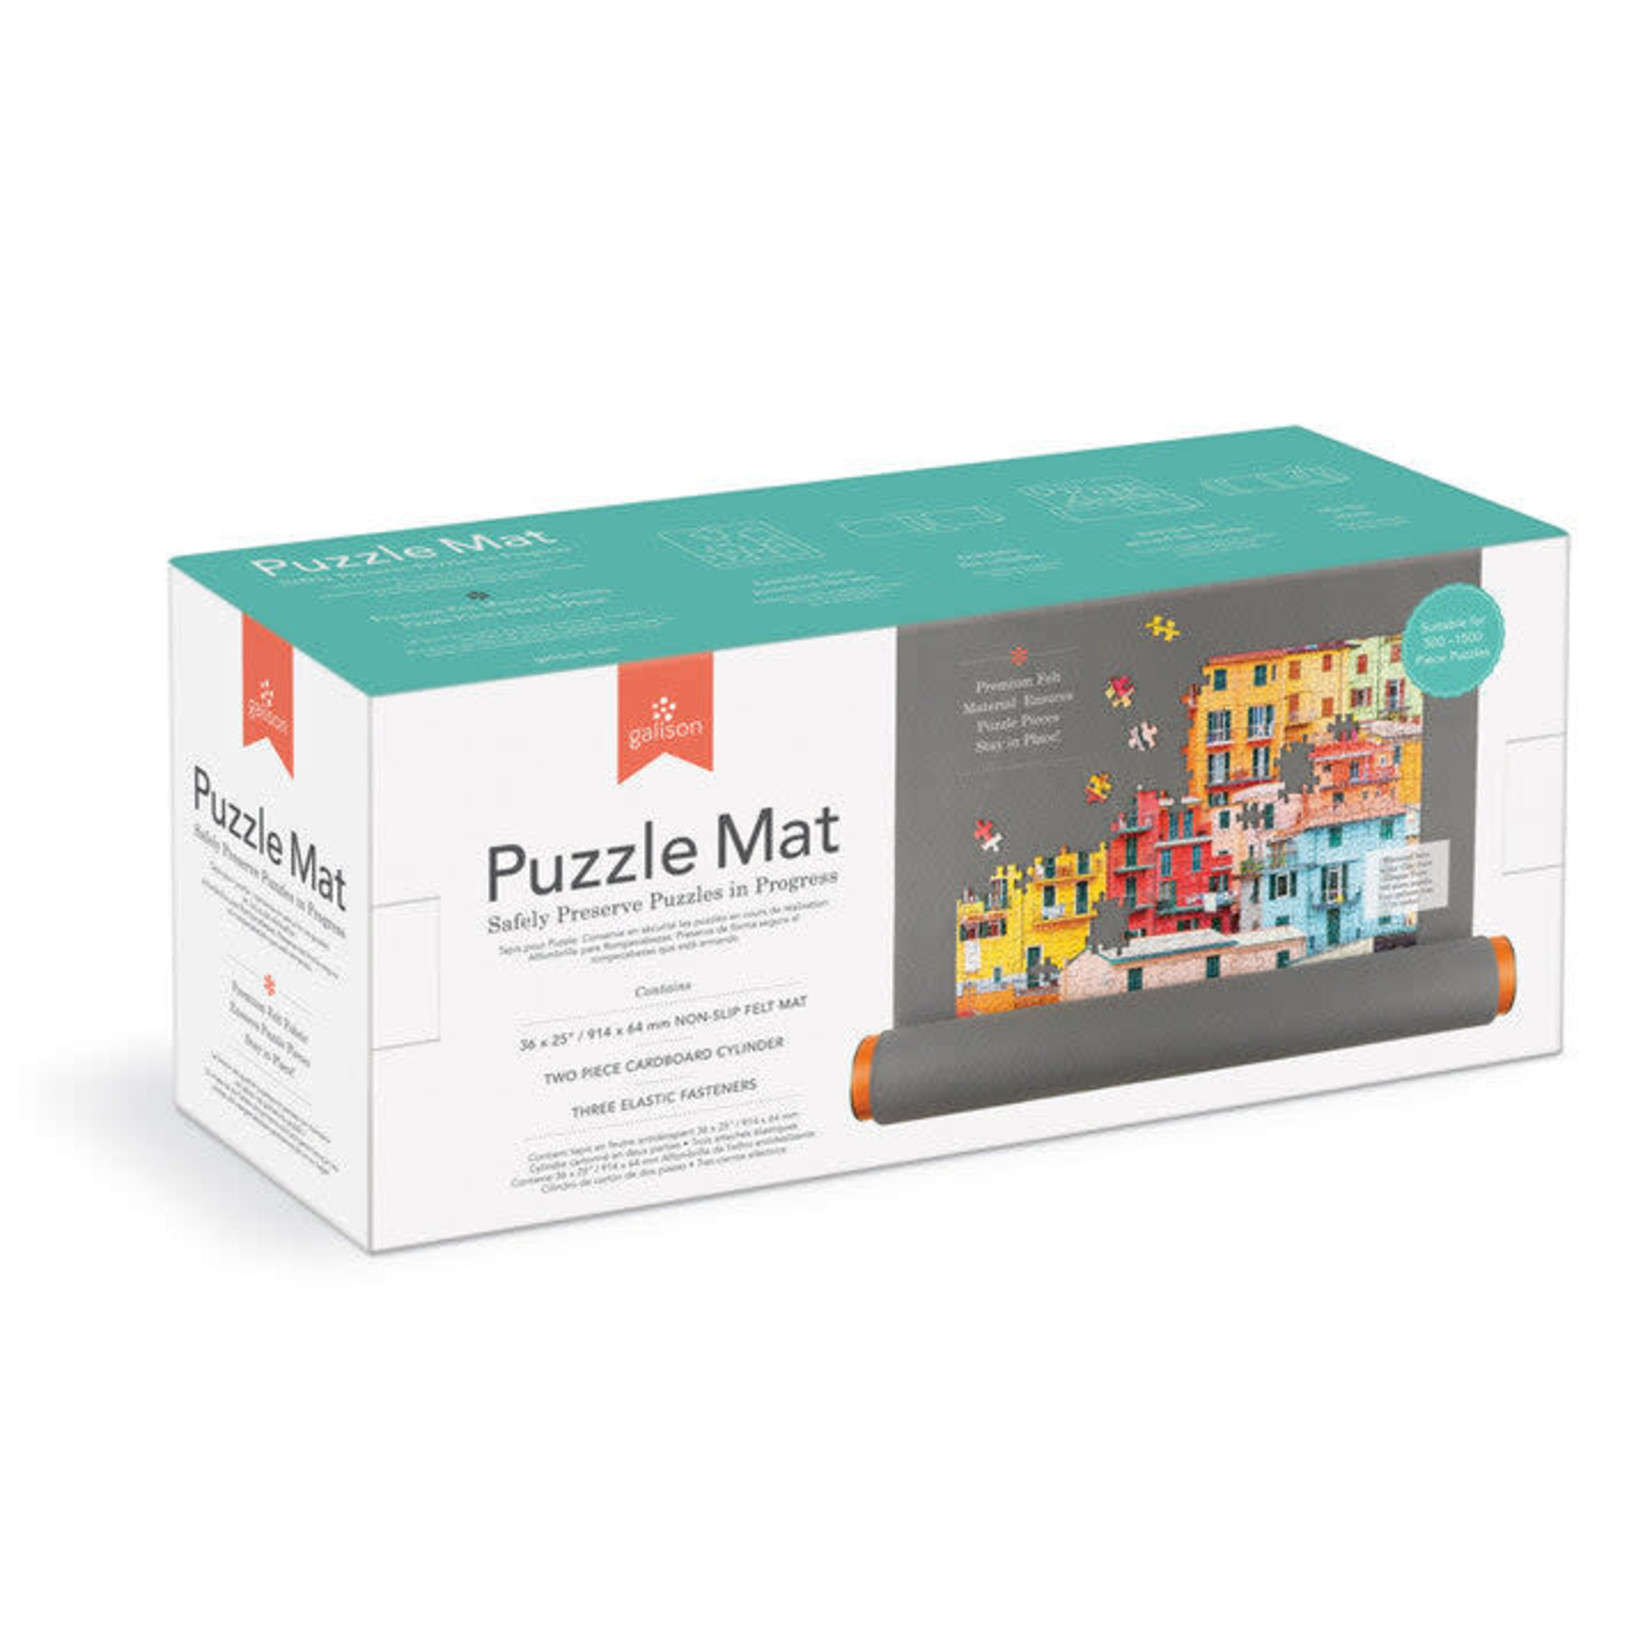 galison Puzzle Mat (36" x 25")